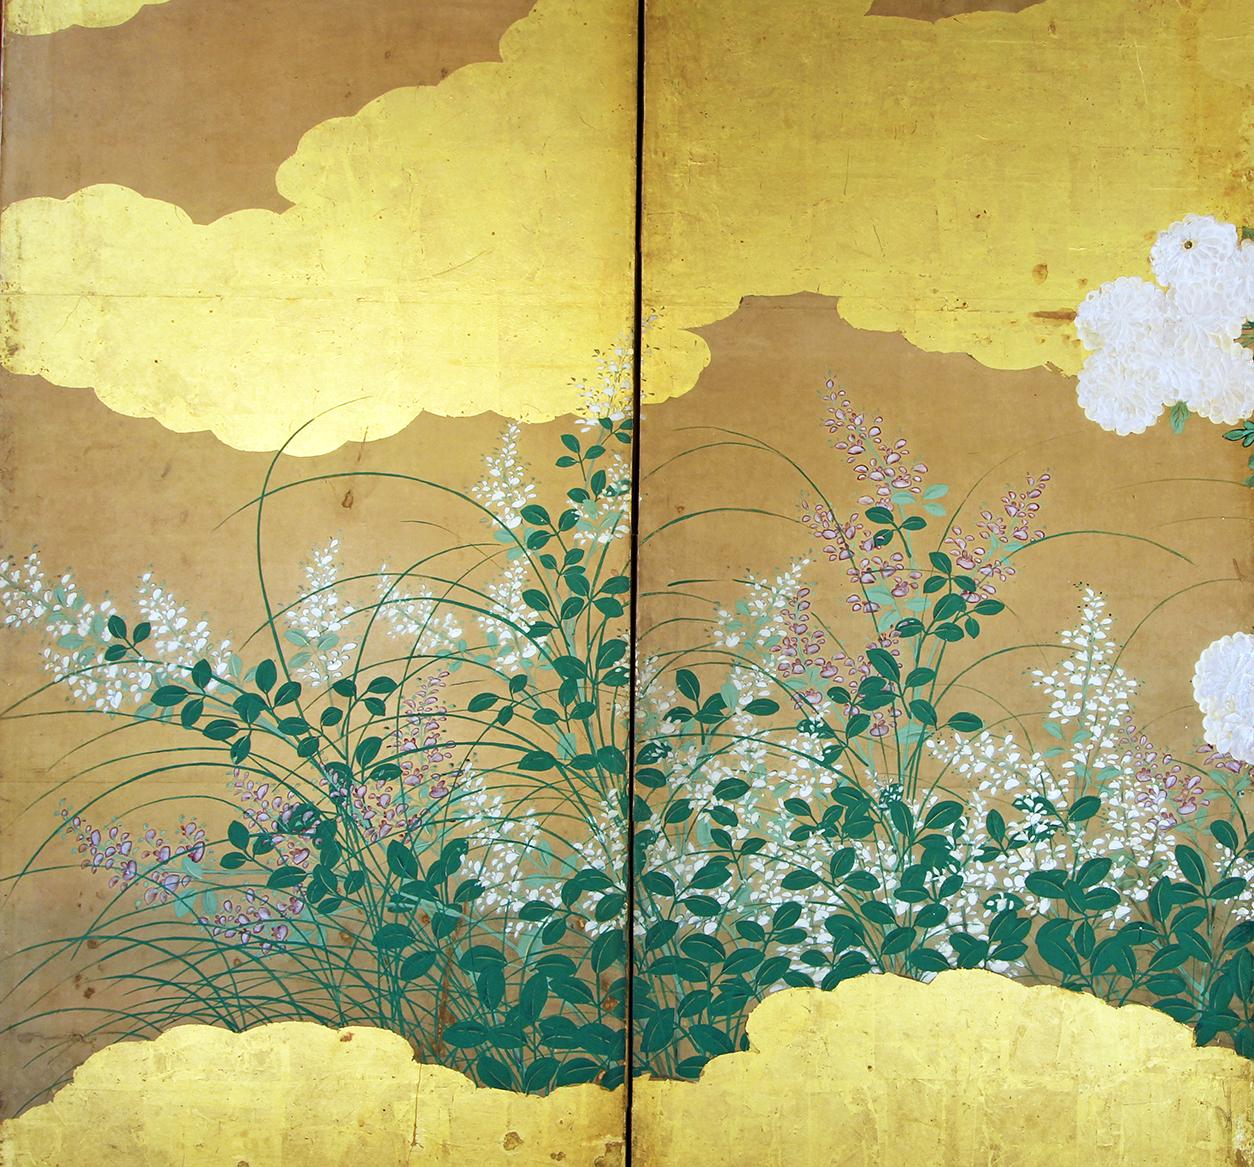 Wolken aus Gold, Wasser und viele bunte Blumen: Japanischer Sechspaneel-Faltwandschirm der Rimpa-Schule. Handbemalt mit Reismineralpigmenten und -tinten auf Reispapier und Blattgold.